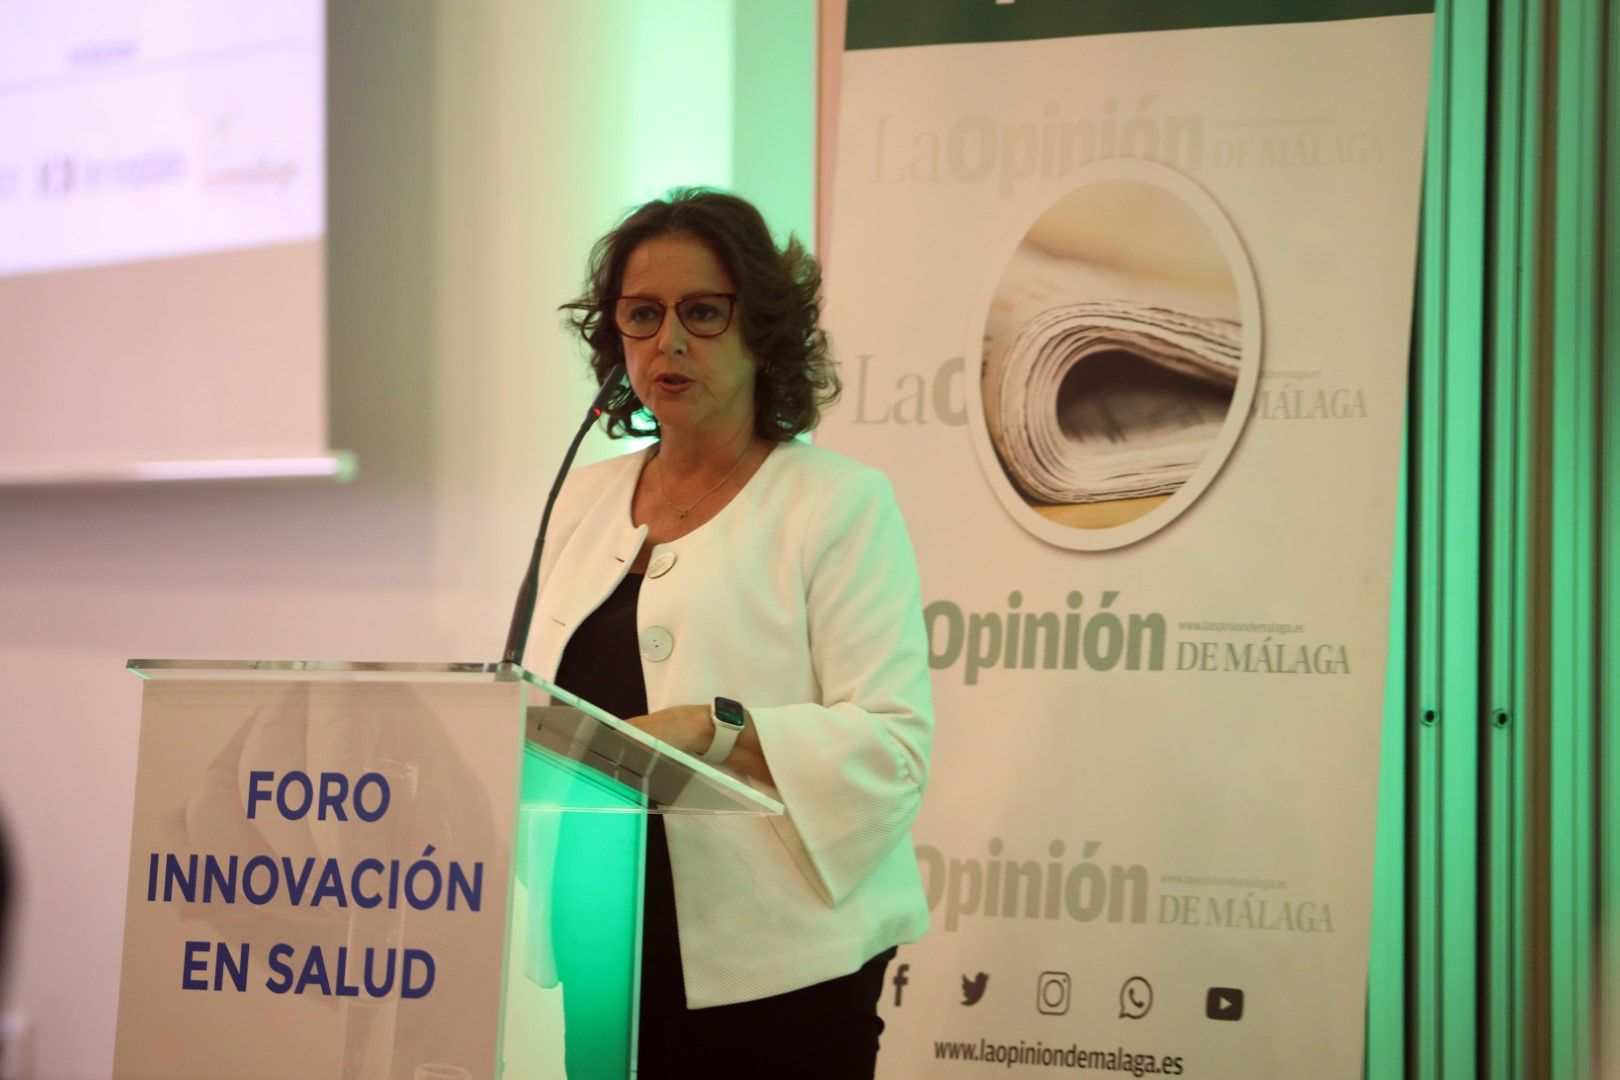 Foro de Innovación en Salud con la consejera de Sanidad, Catalina García